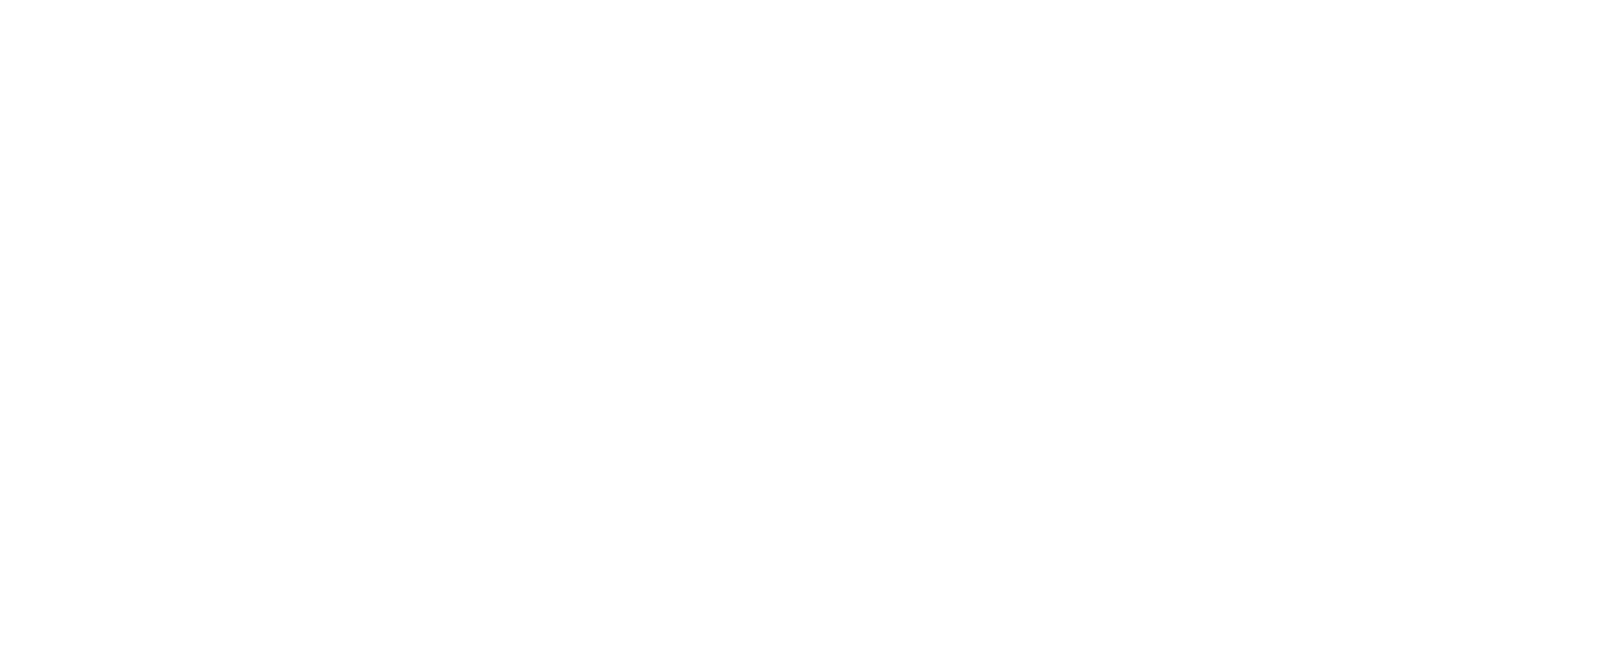 TPG Capital logo large for dark backgrounds (transparent PNG)